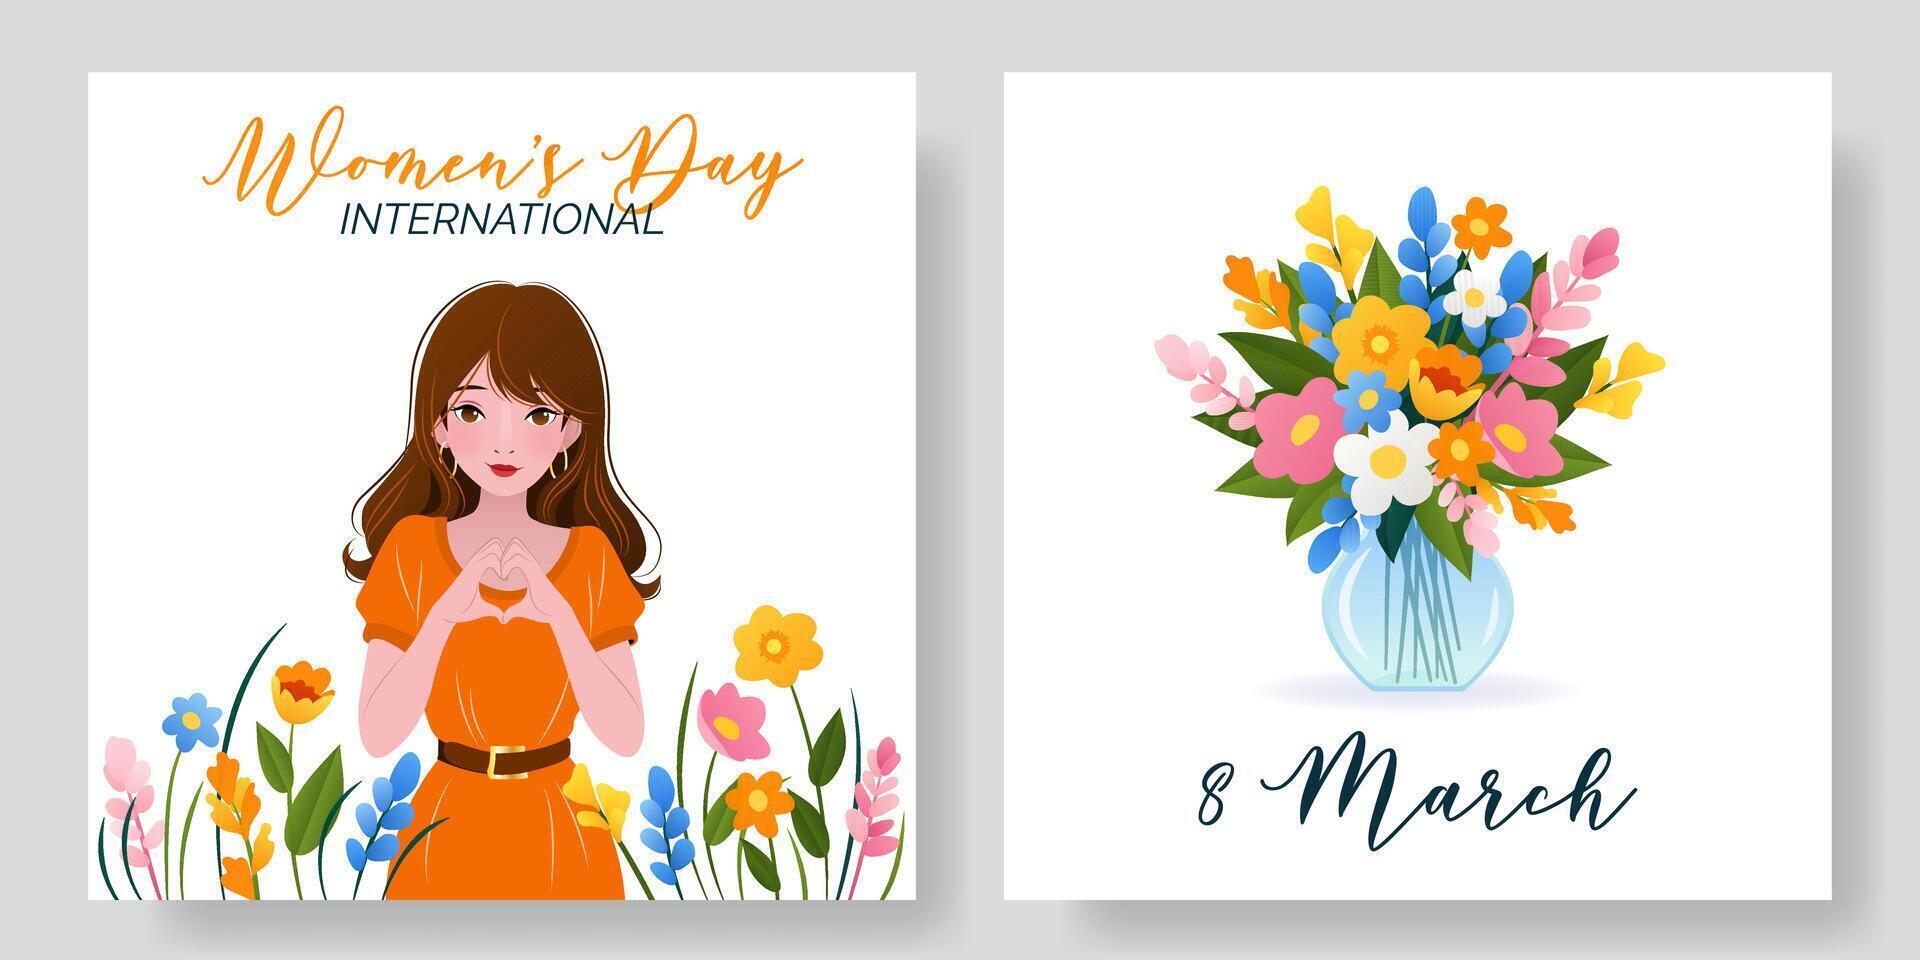 internationell kvinnors dag fyrkant banderoller uppsättning. 8 Mars. porträtt av kvinna med vår blommor. bukett av blommor i vas. design för affisch, kampanj, social media posta, vykort. vektor illustration.